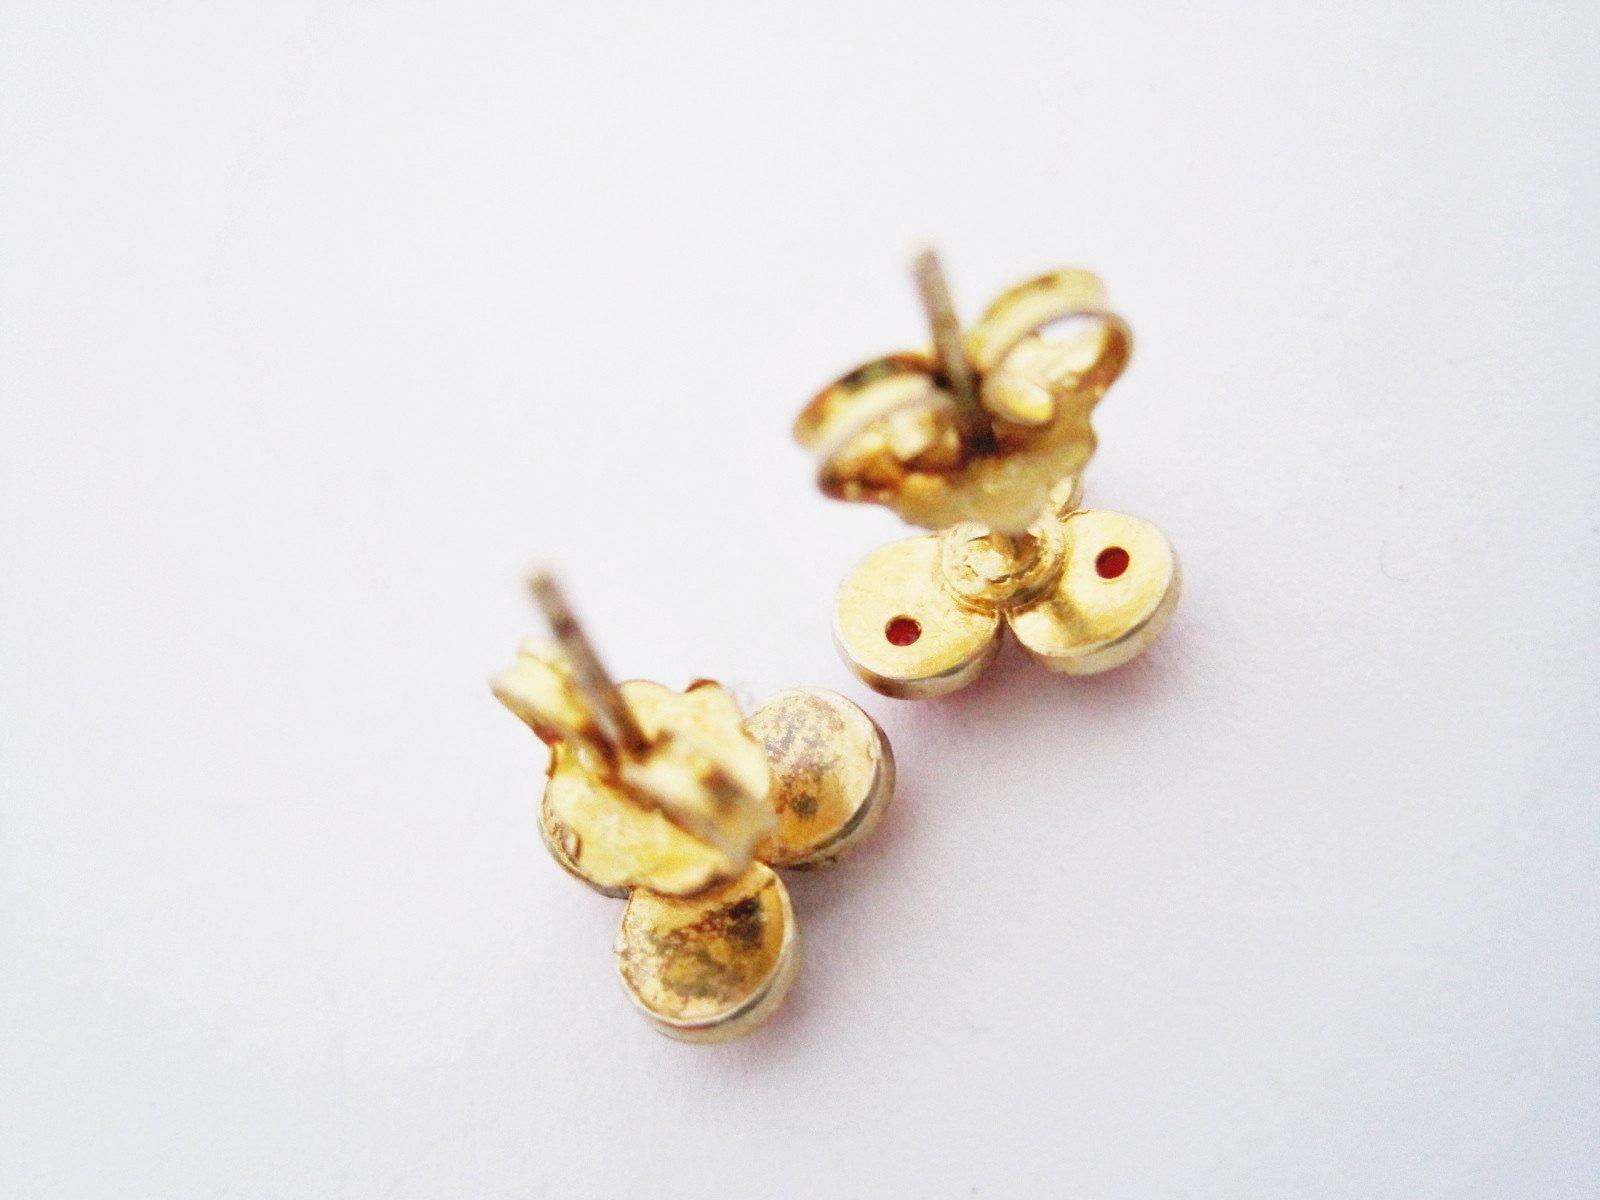 coral earrings